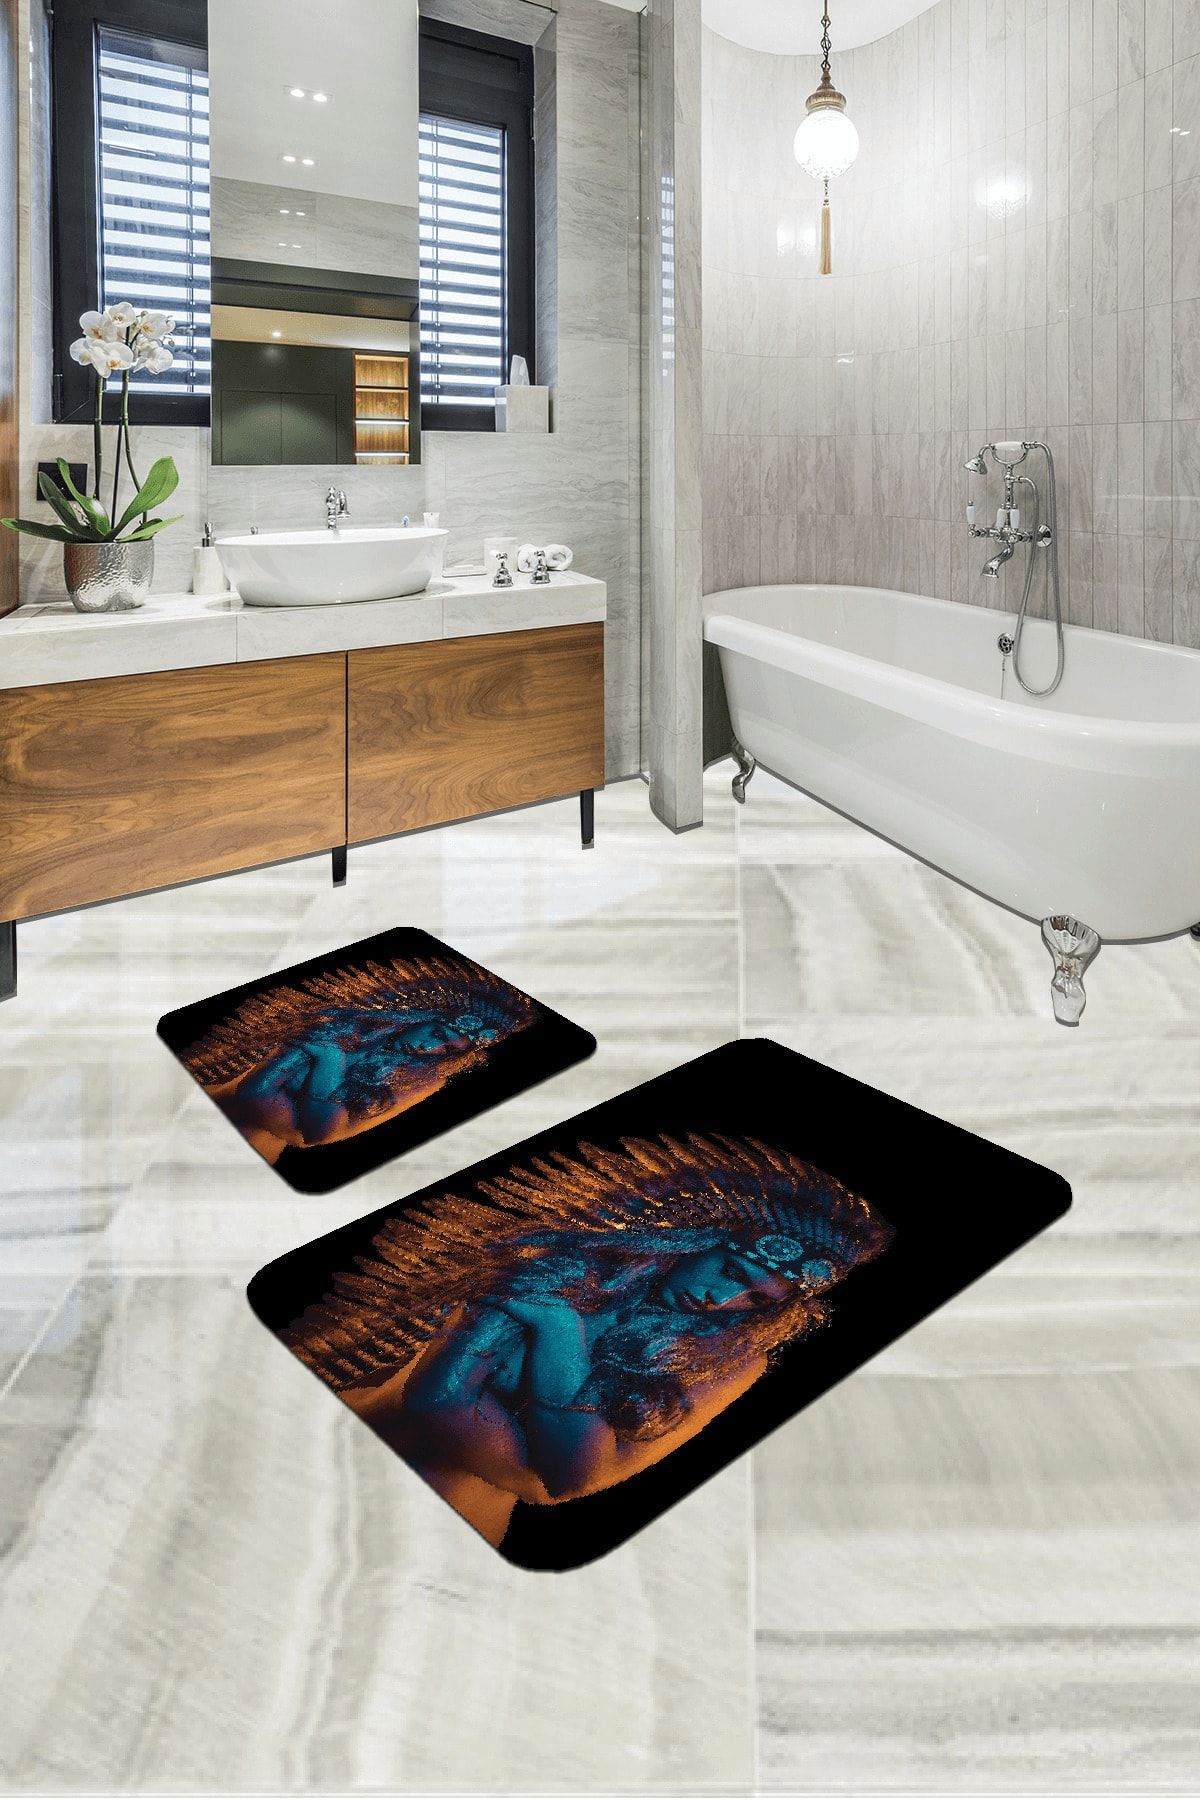 RugViva Dijital Banyo Halısı Klozet Takımı 2'li Paspas Seti Bs316 60x90cm + 60x60cm